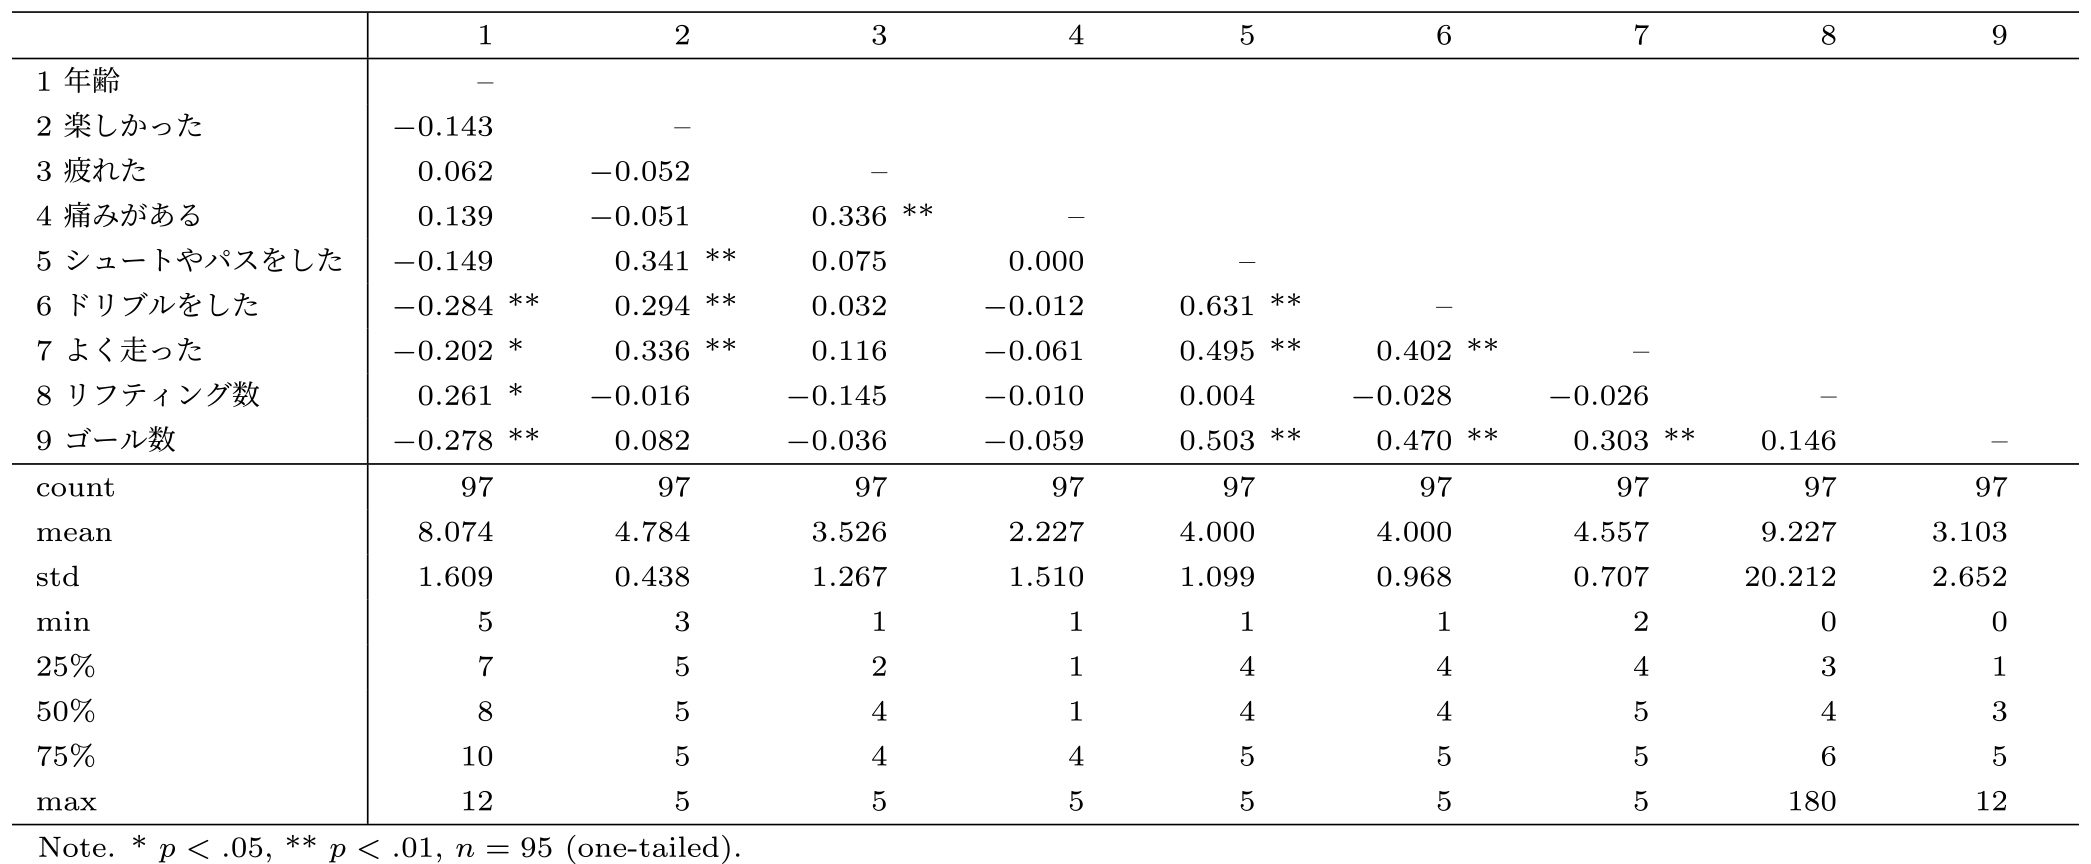 アンケート項目間の相関係数ρ　Correlation coefficients between survey items ρ.